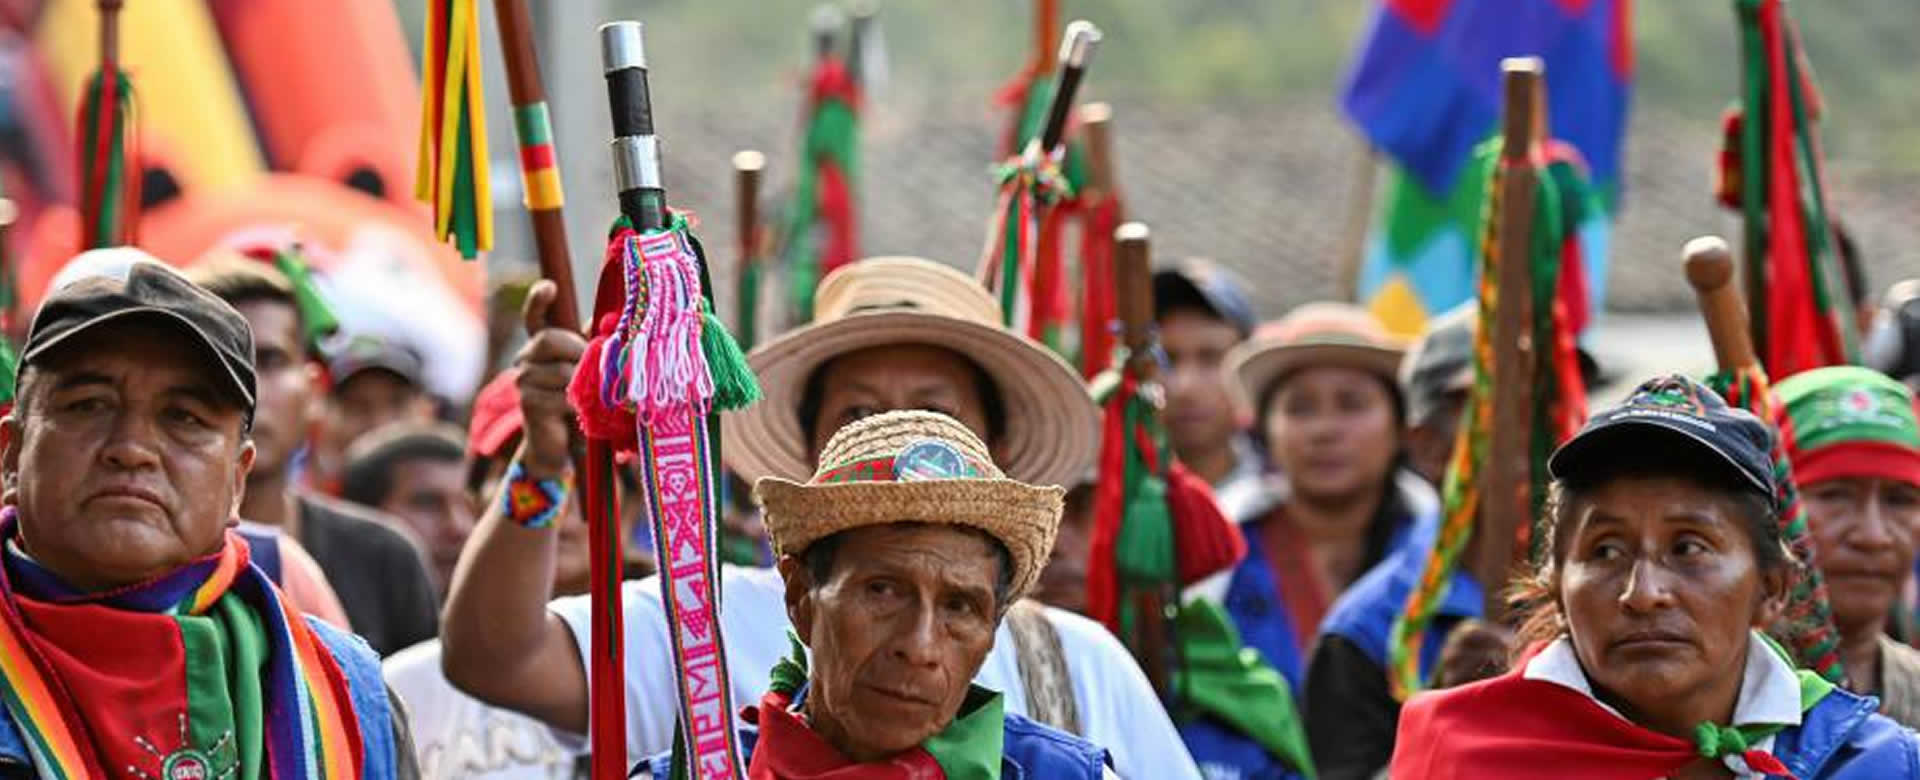 Movimientos indígenas cauca colombiano